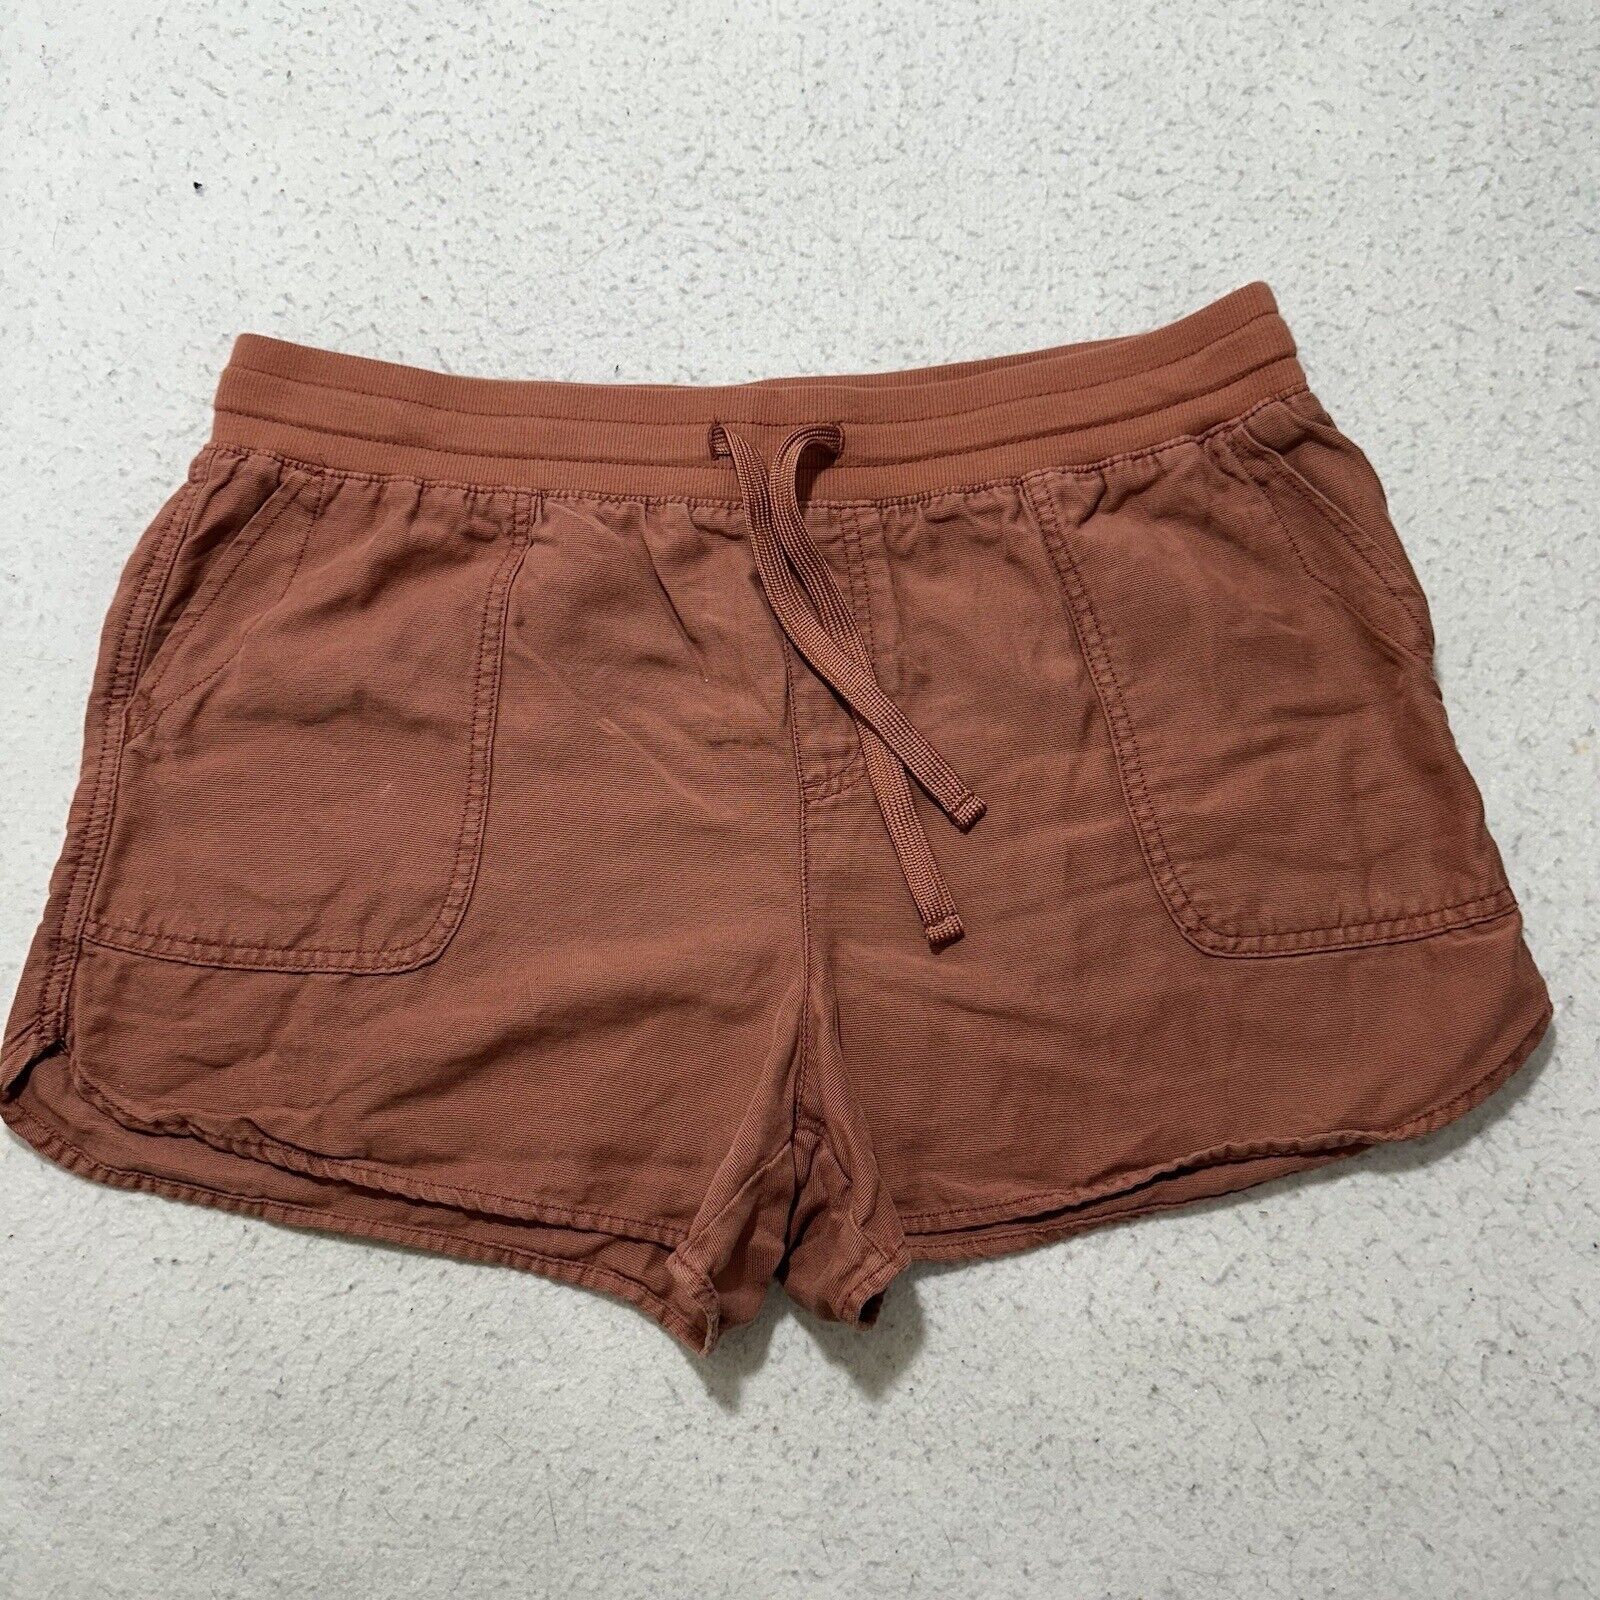 Maurices Women’s Large 3" Inseam Sweat Shorts Drawstring Flat Front Brown/Orange